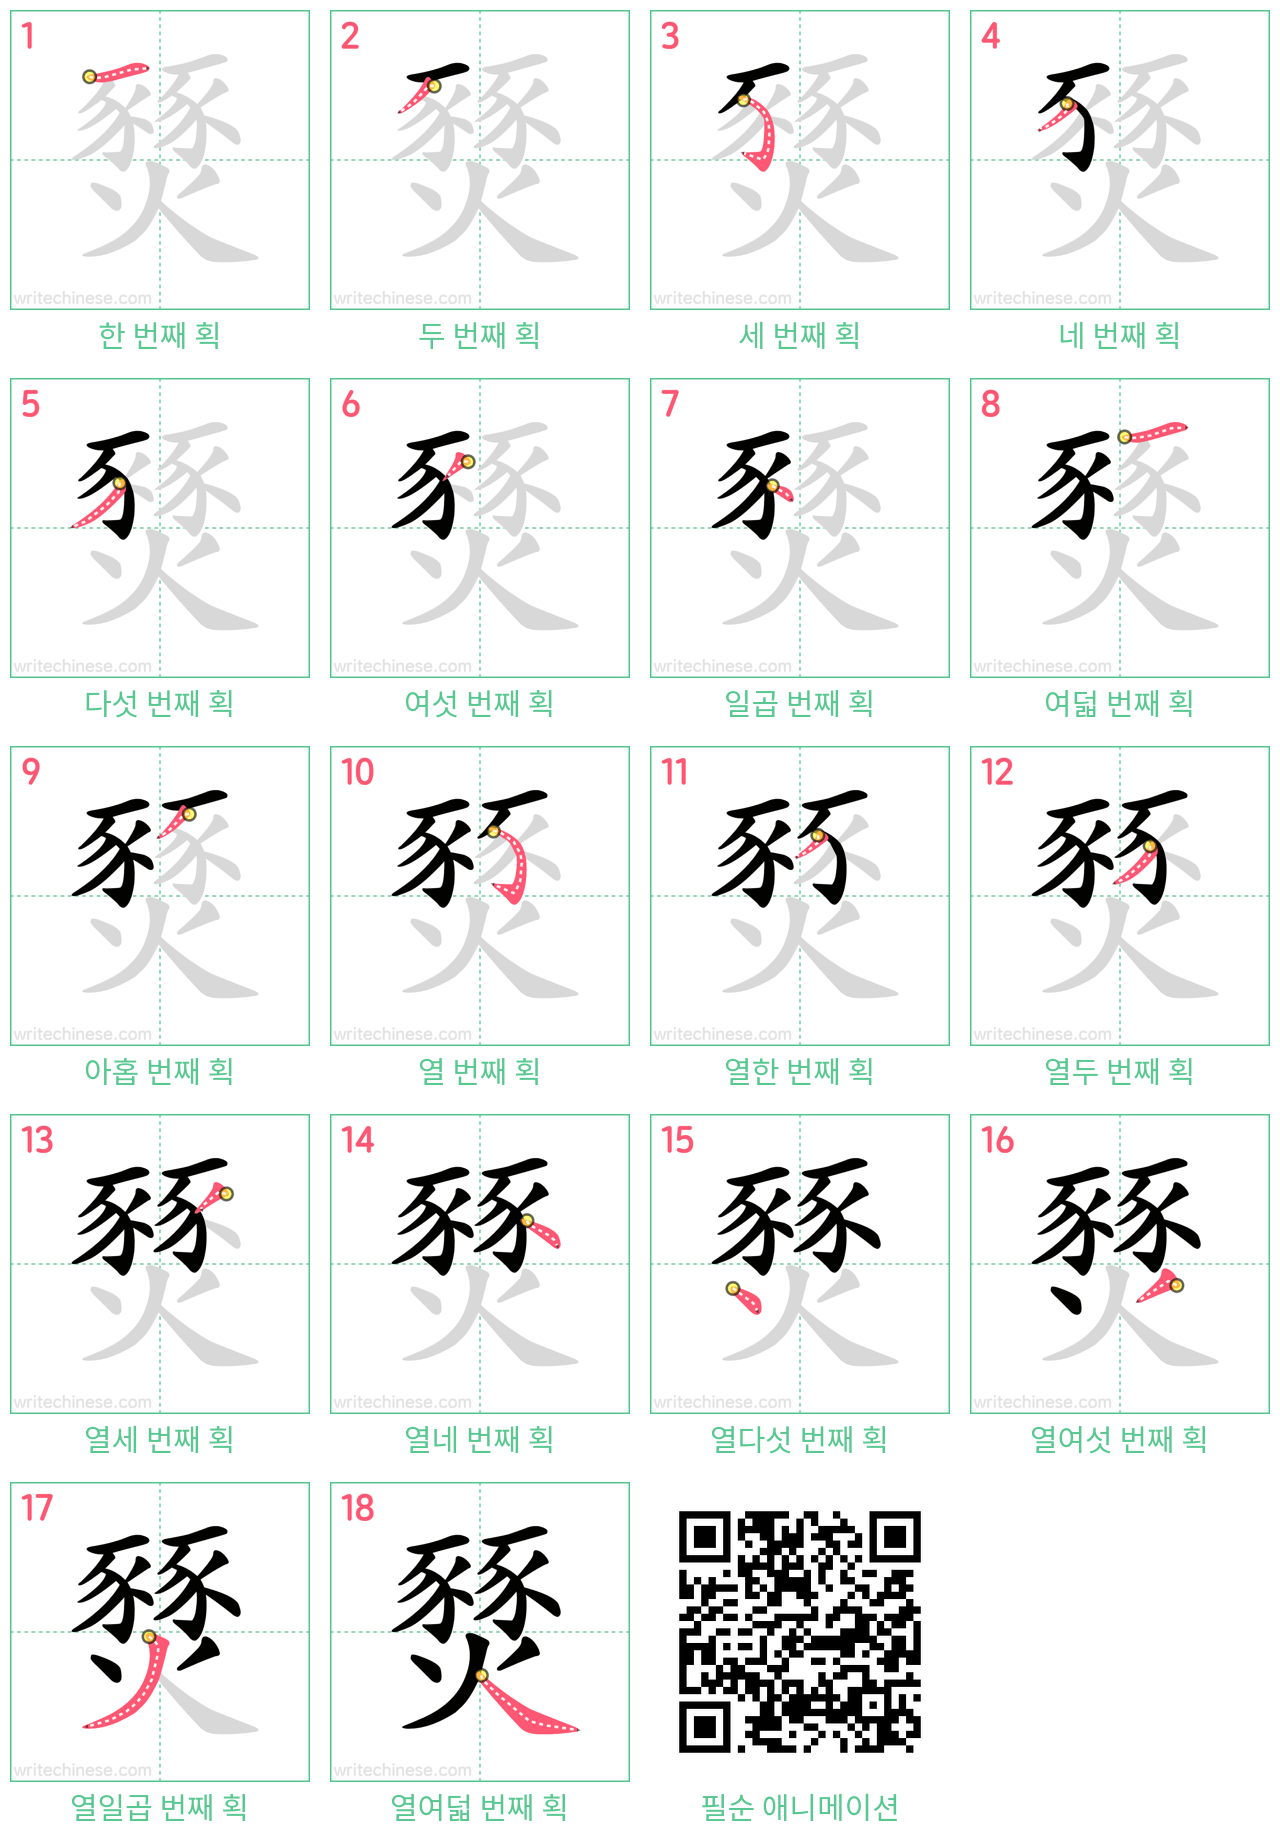 燹 step-by-step stroke order diagrams